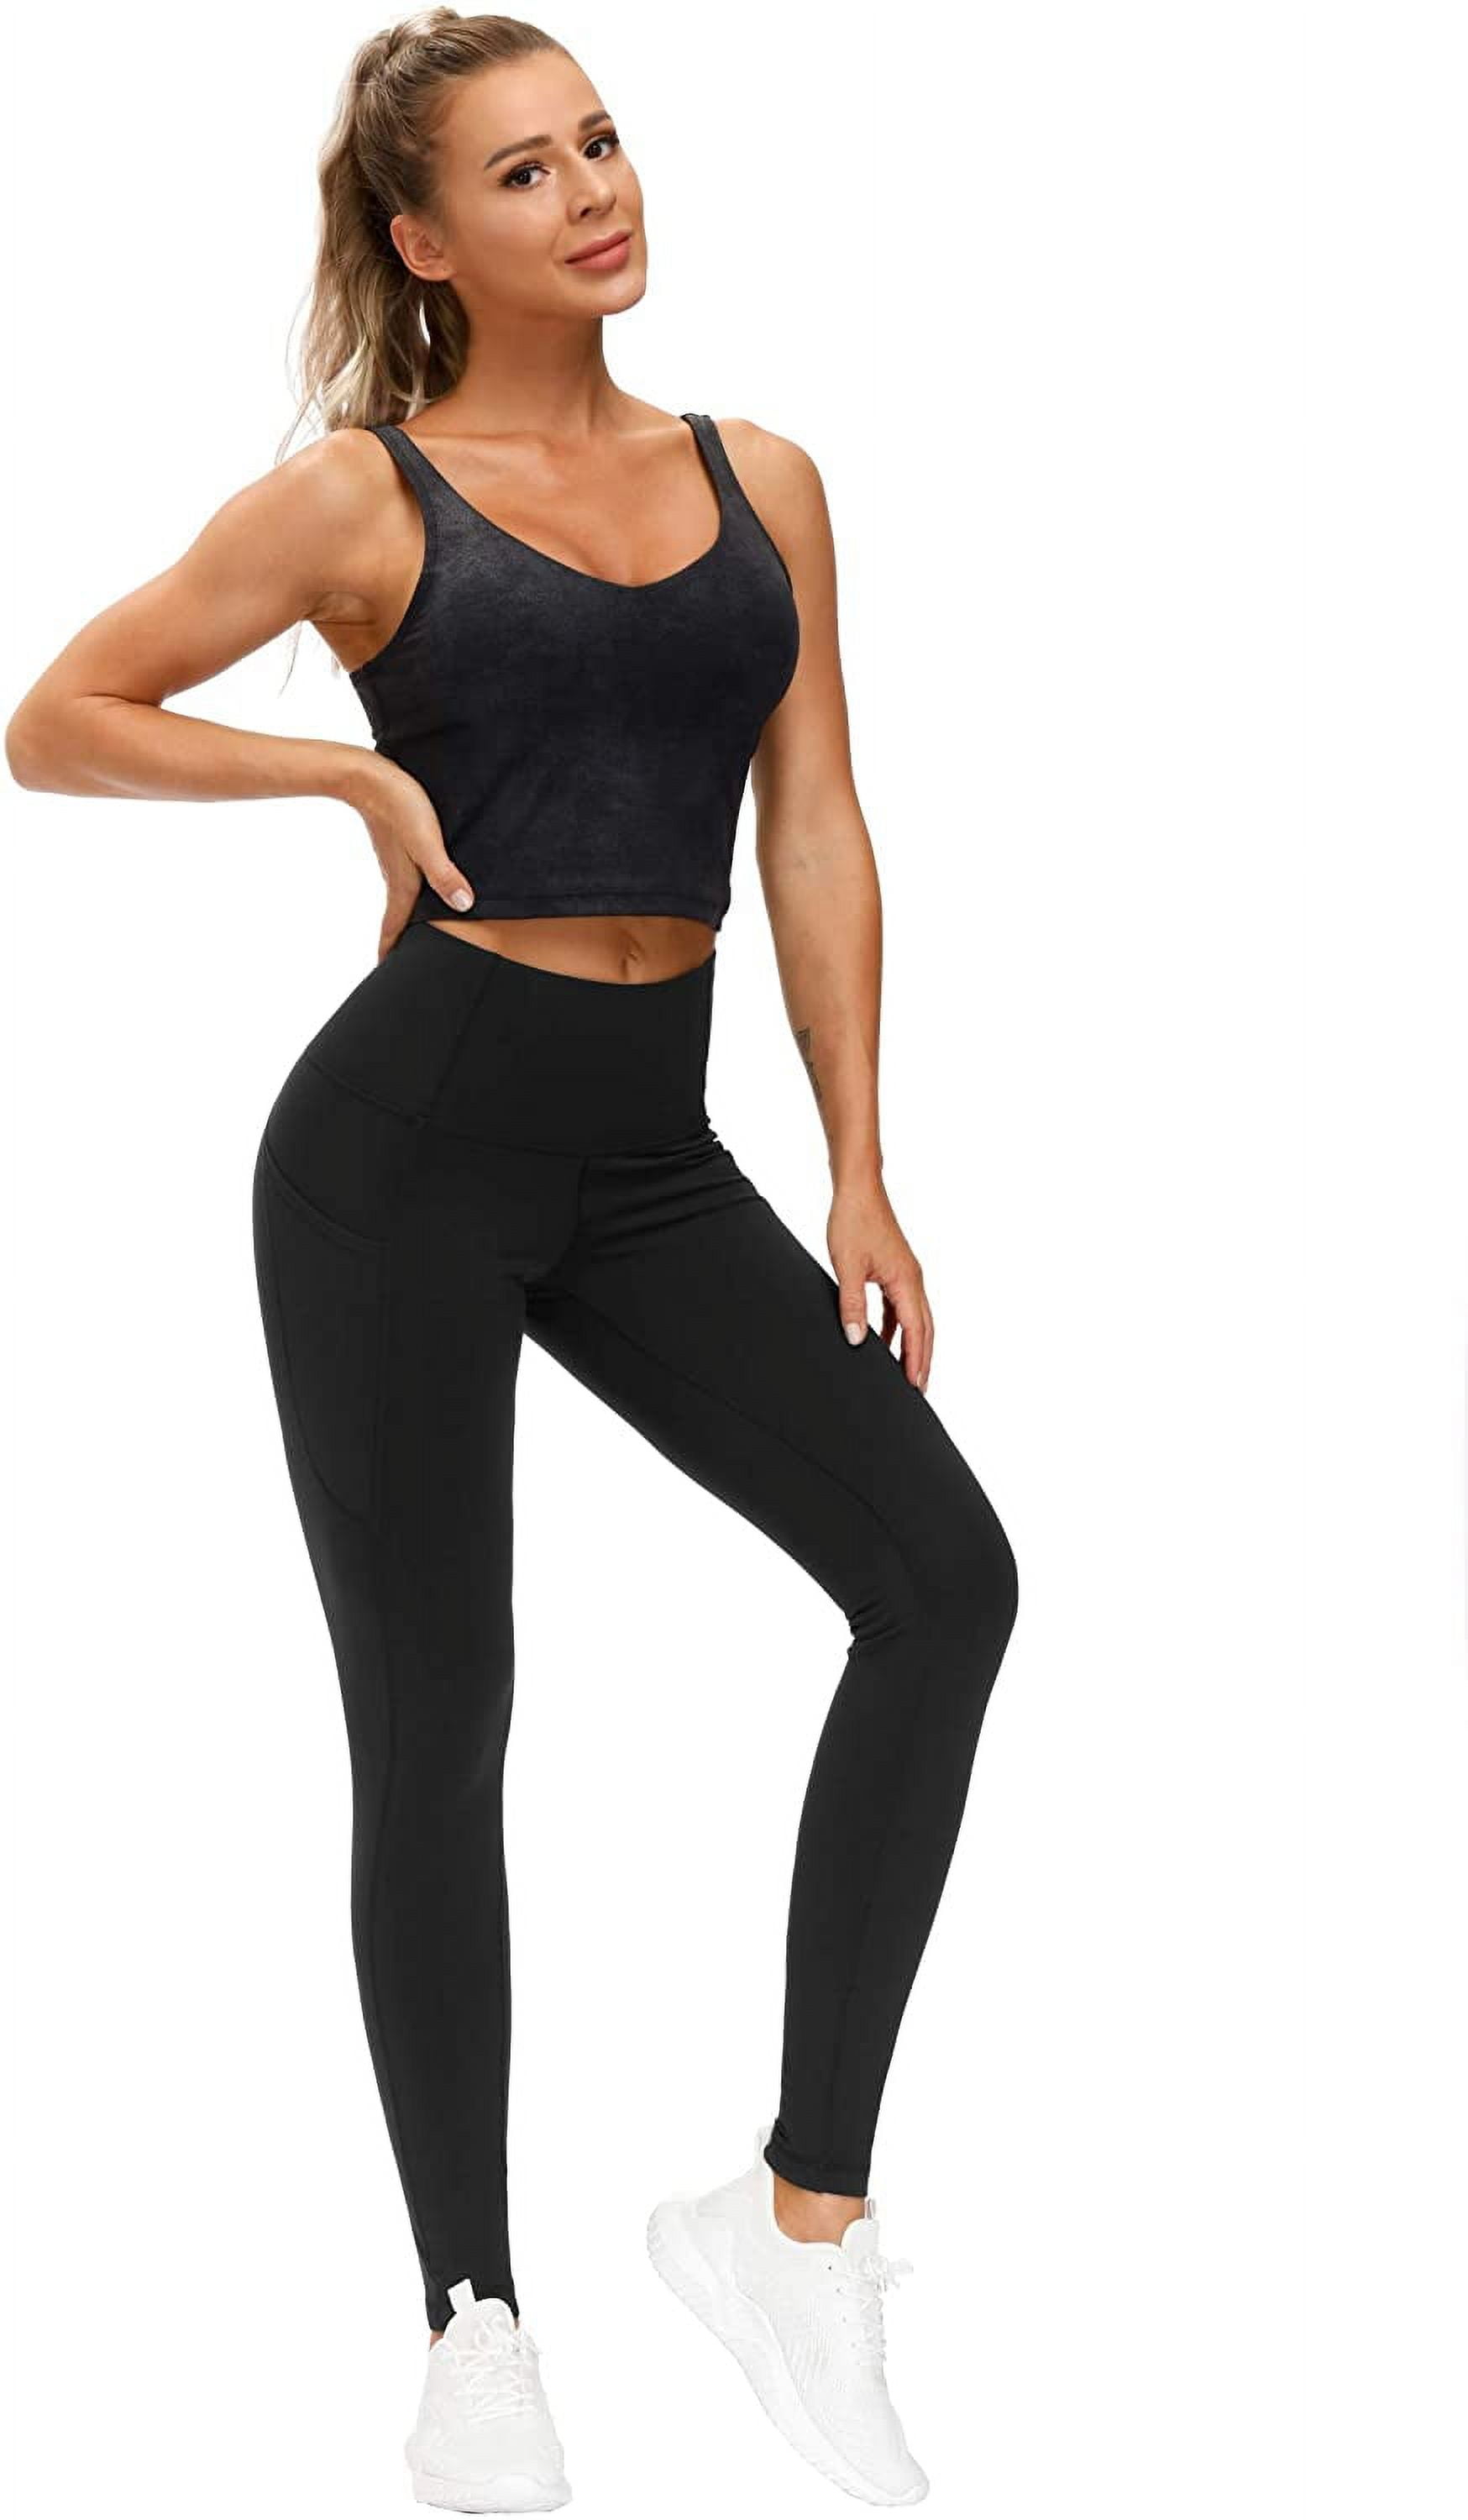 Yoga Pants 24/7 on X: #yogapants #workout #gym